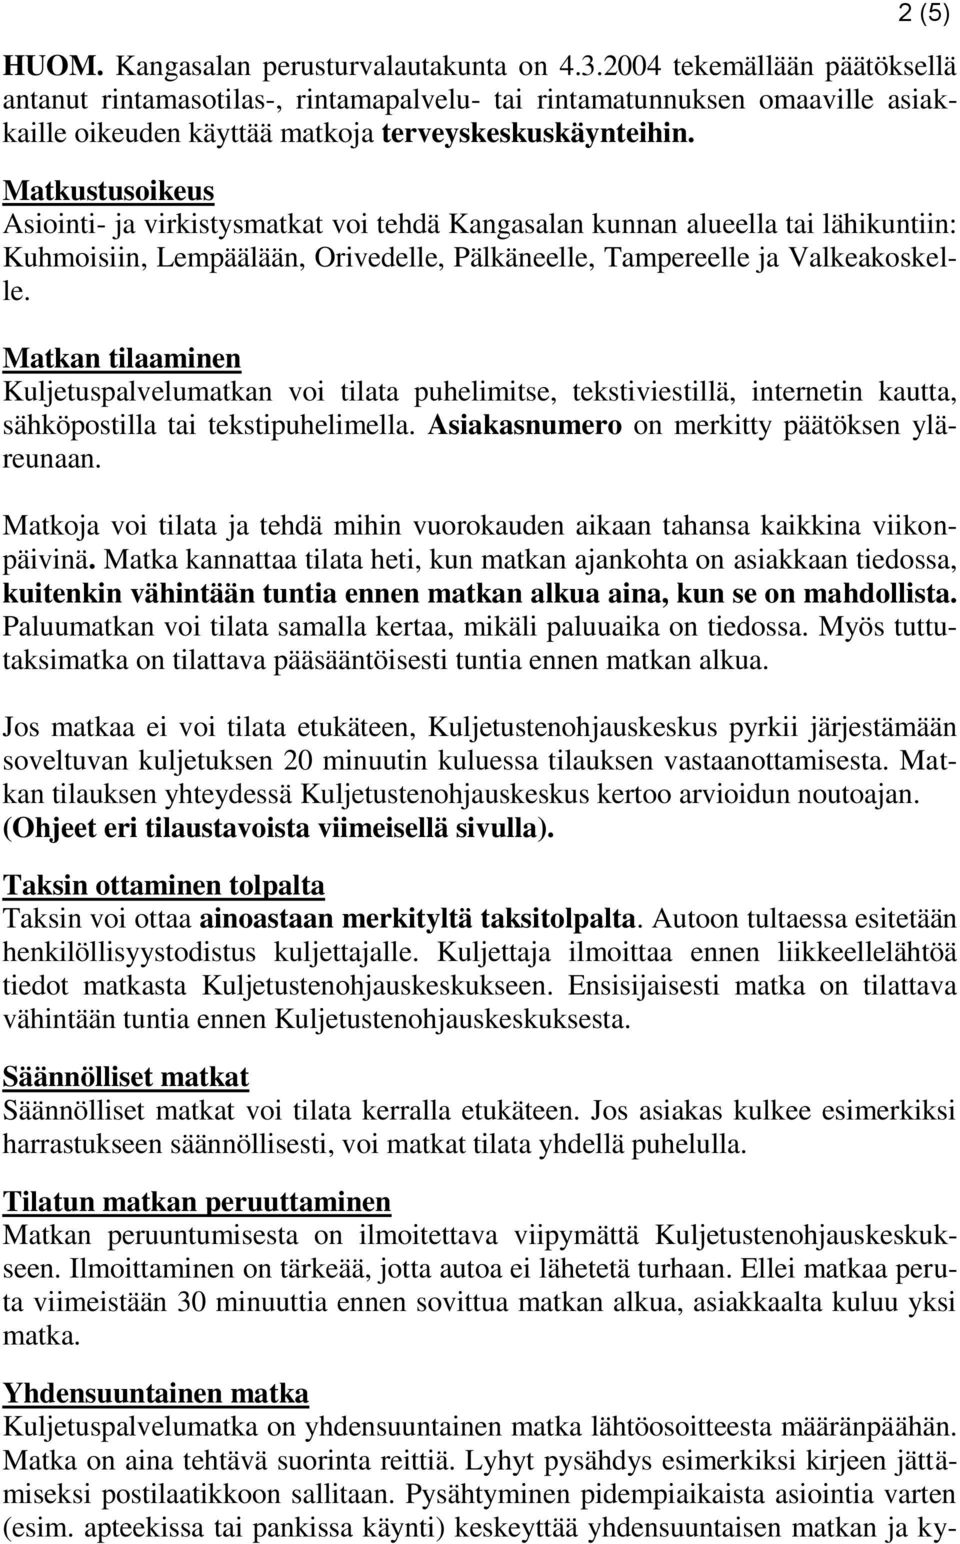 Matkustusoikeus Asiointi- ja virkistysmatkat voi tehdä Kangasalan kunnan alueella tai lähikuntiin: Kuhmoisiin, Lempäälään, Orivedelle, Pälkäneelle, Tampereelle ja Valkeakoskelle.